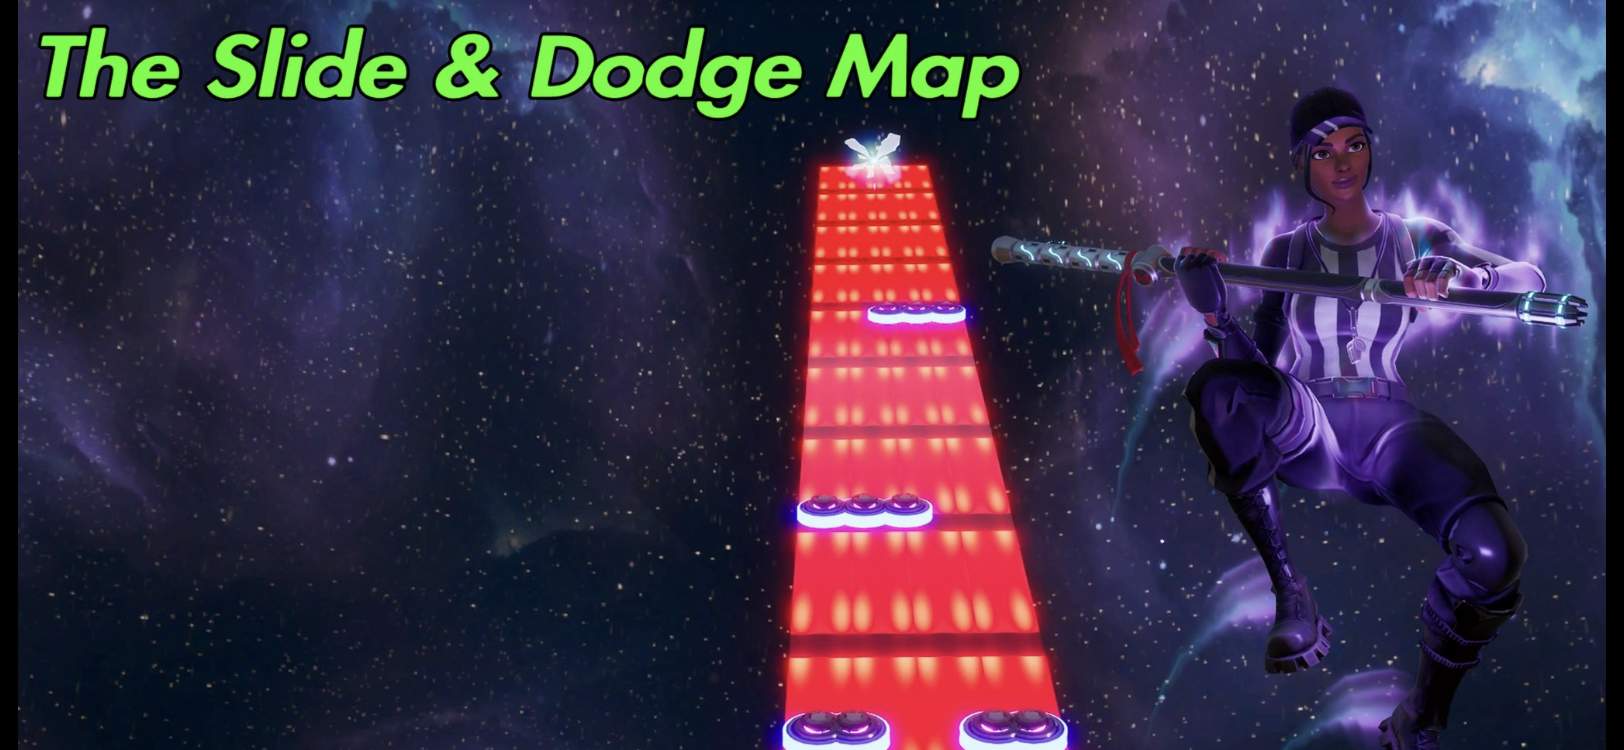 THE SLIDE & DODGE MAP